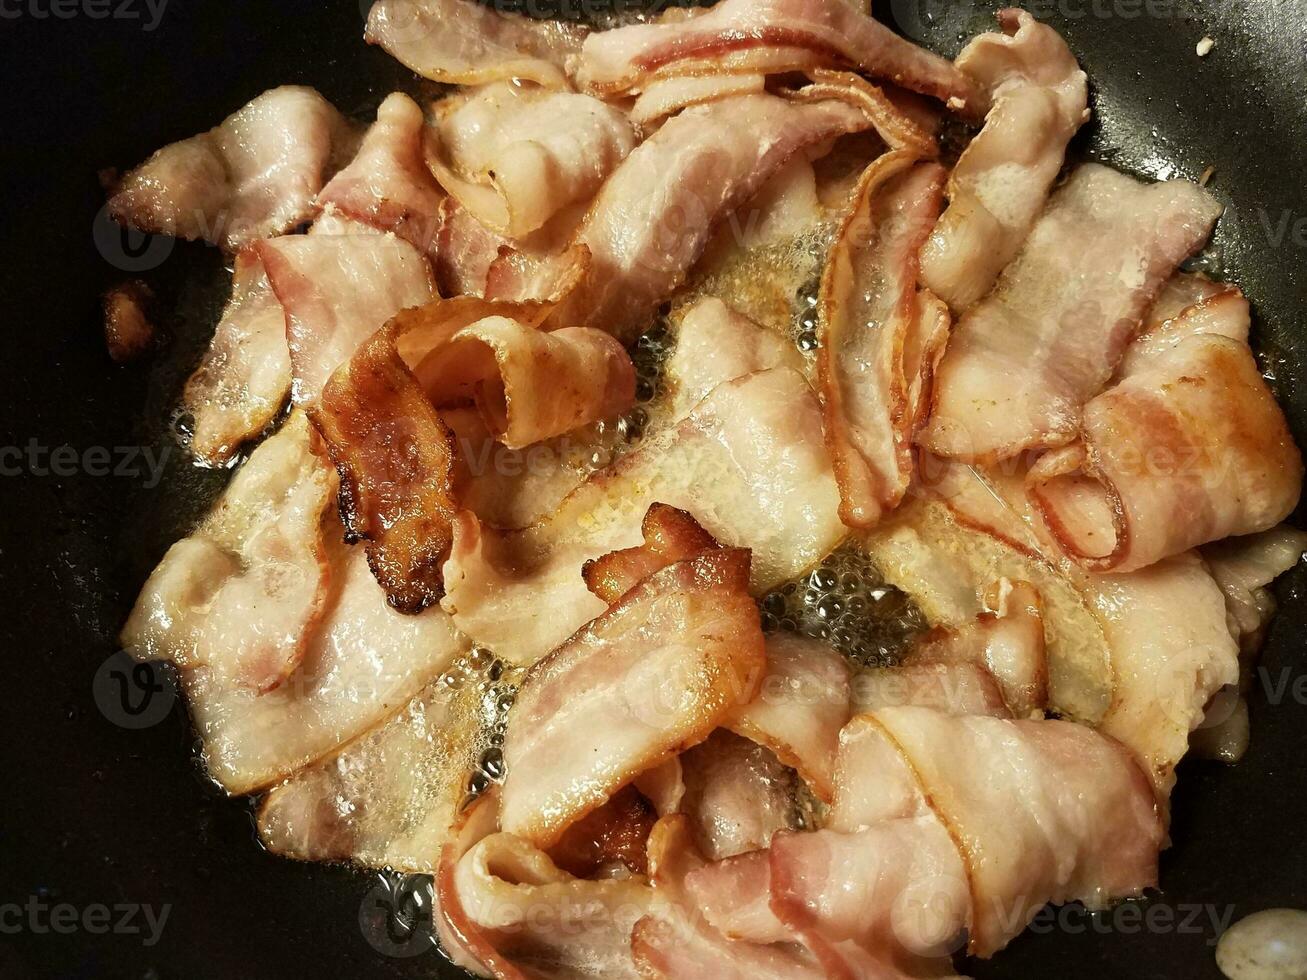 cuisson du bacon dans une poêle ou une poêle sur la cuisinière photo